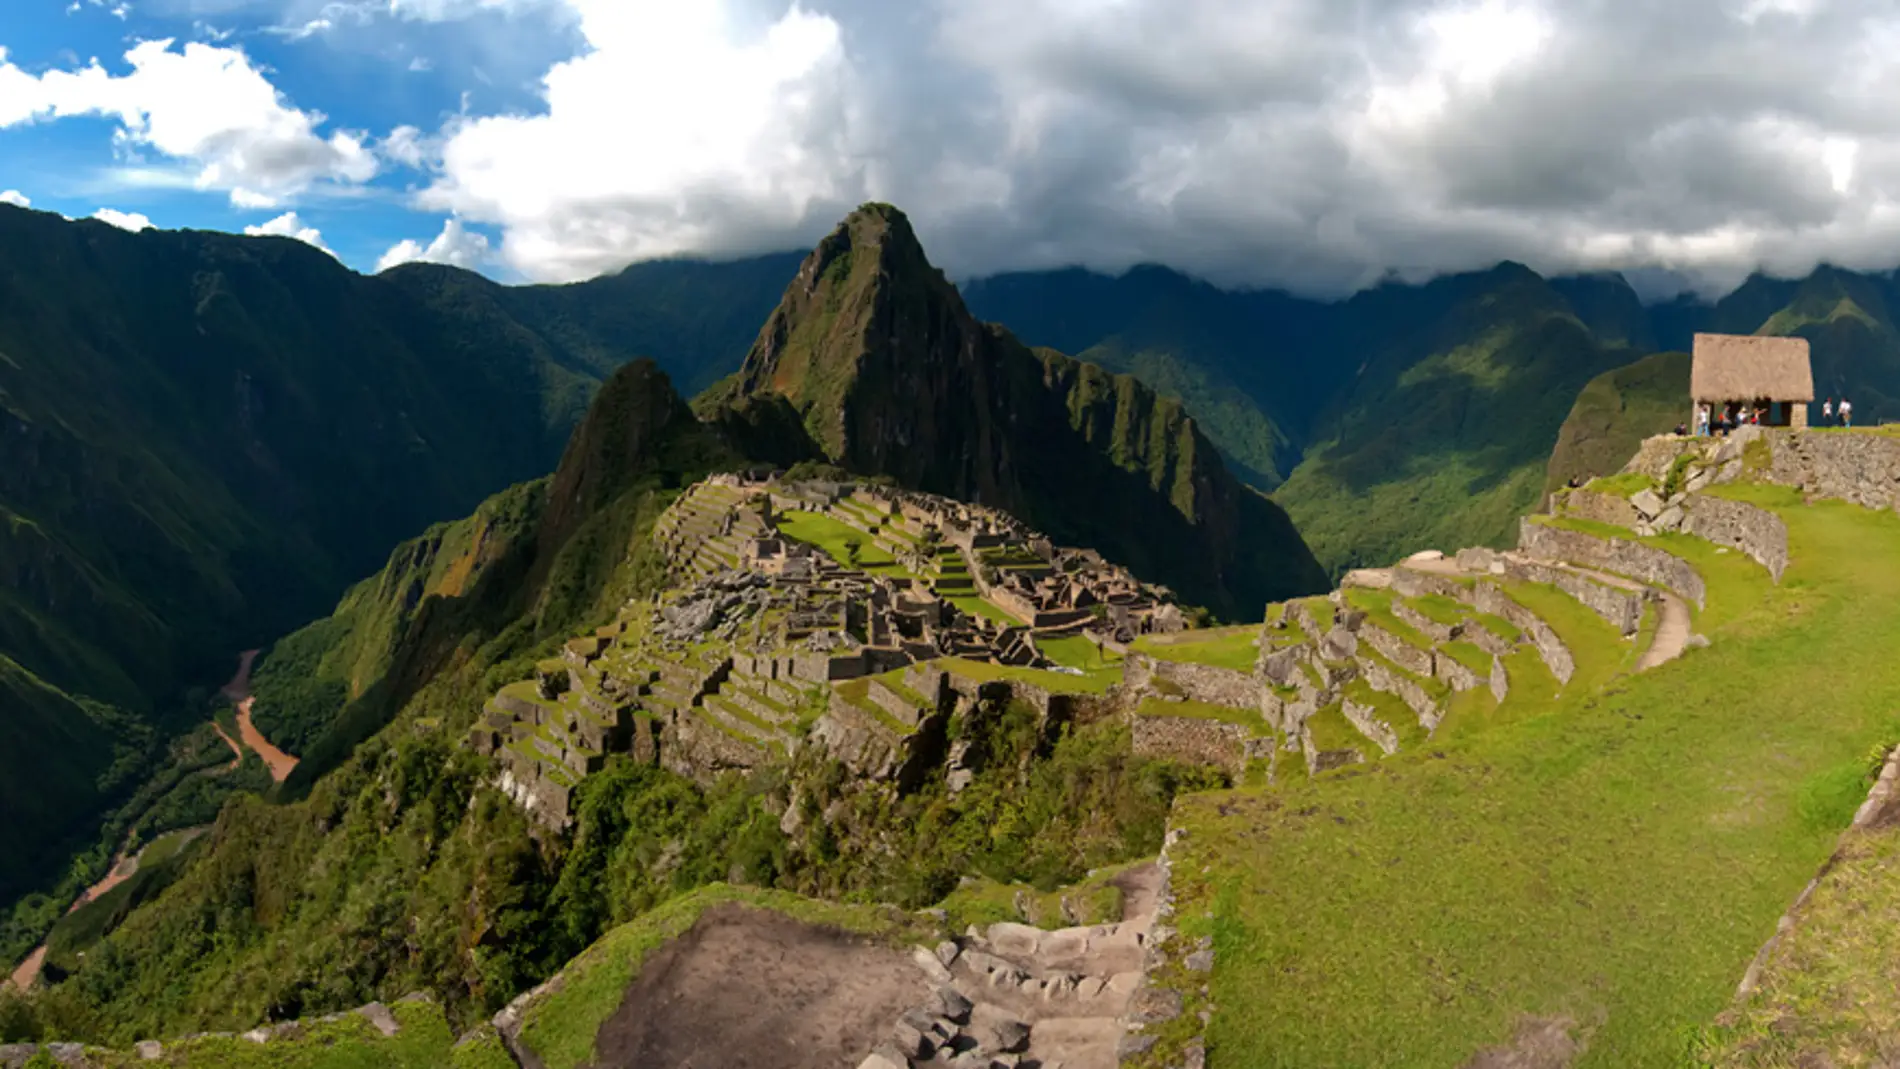 Experiencias que solo puedes vivir en Perú